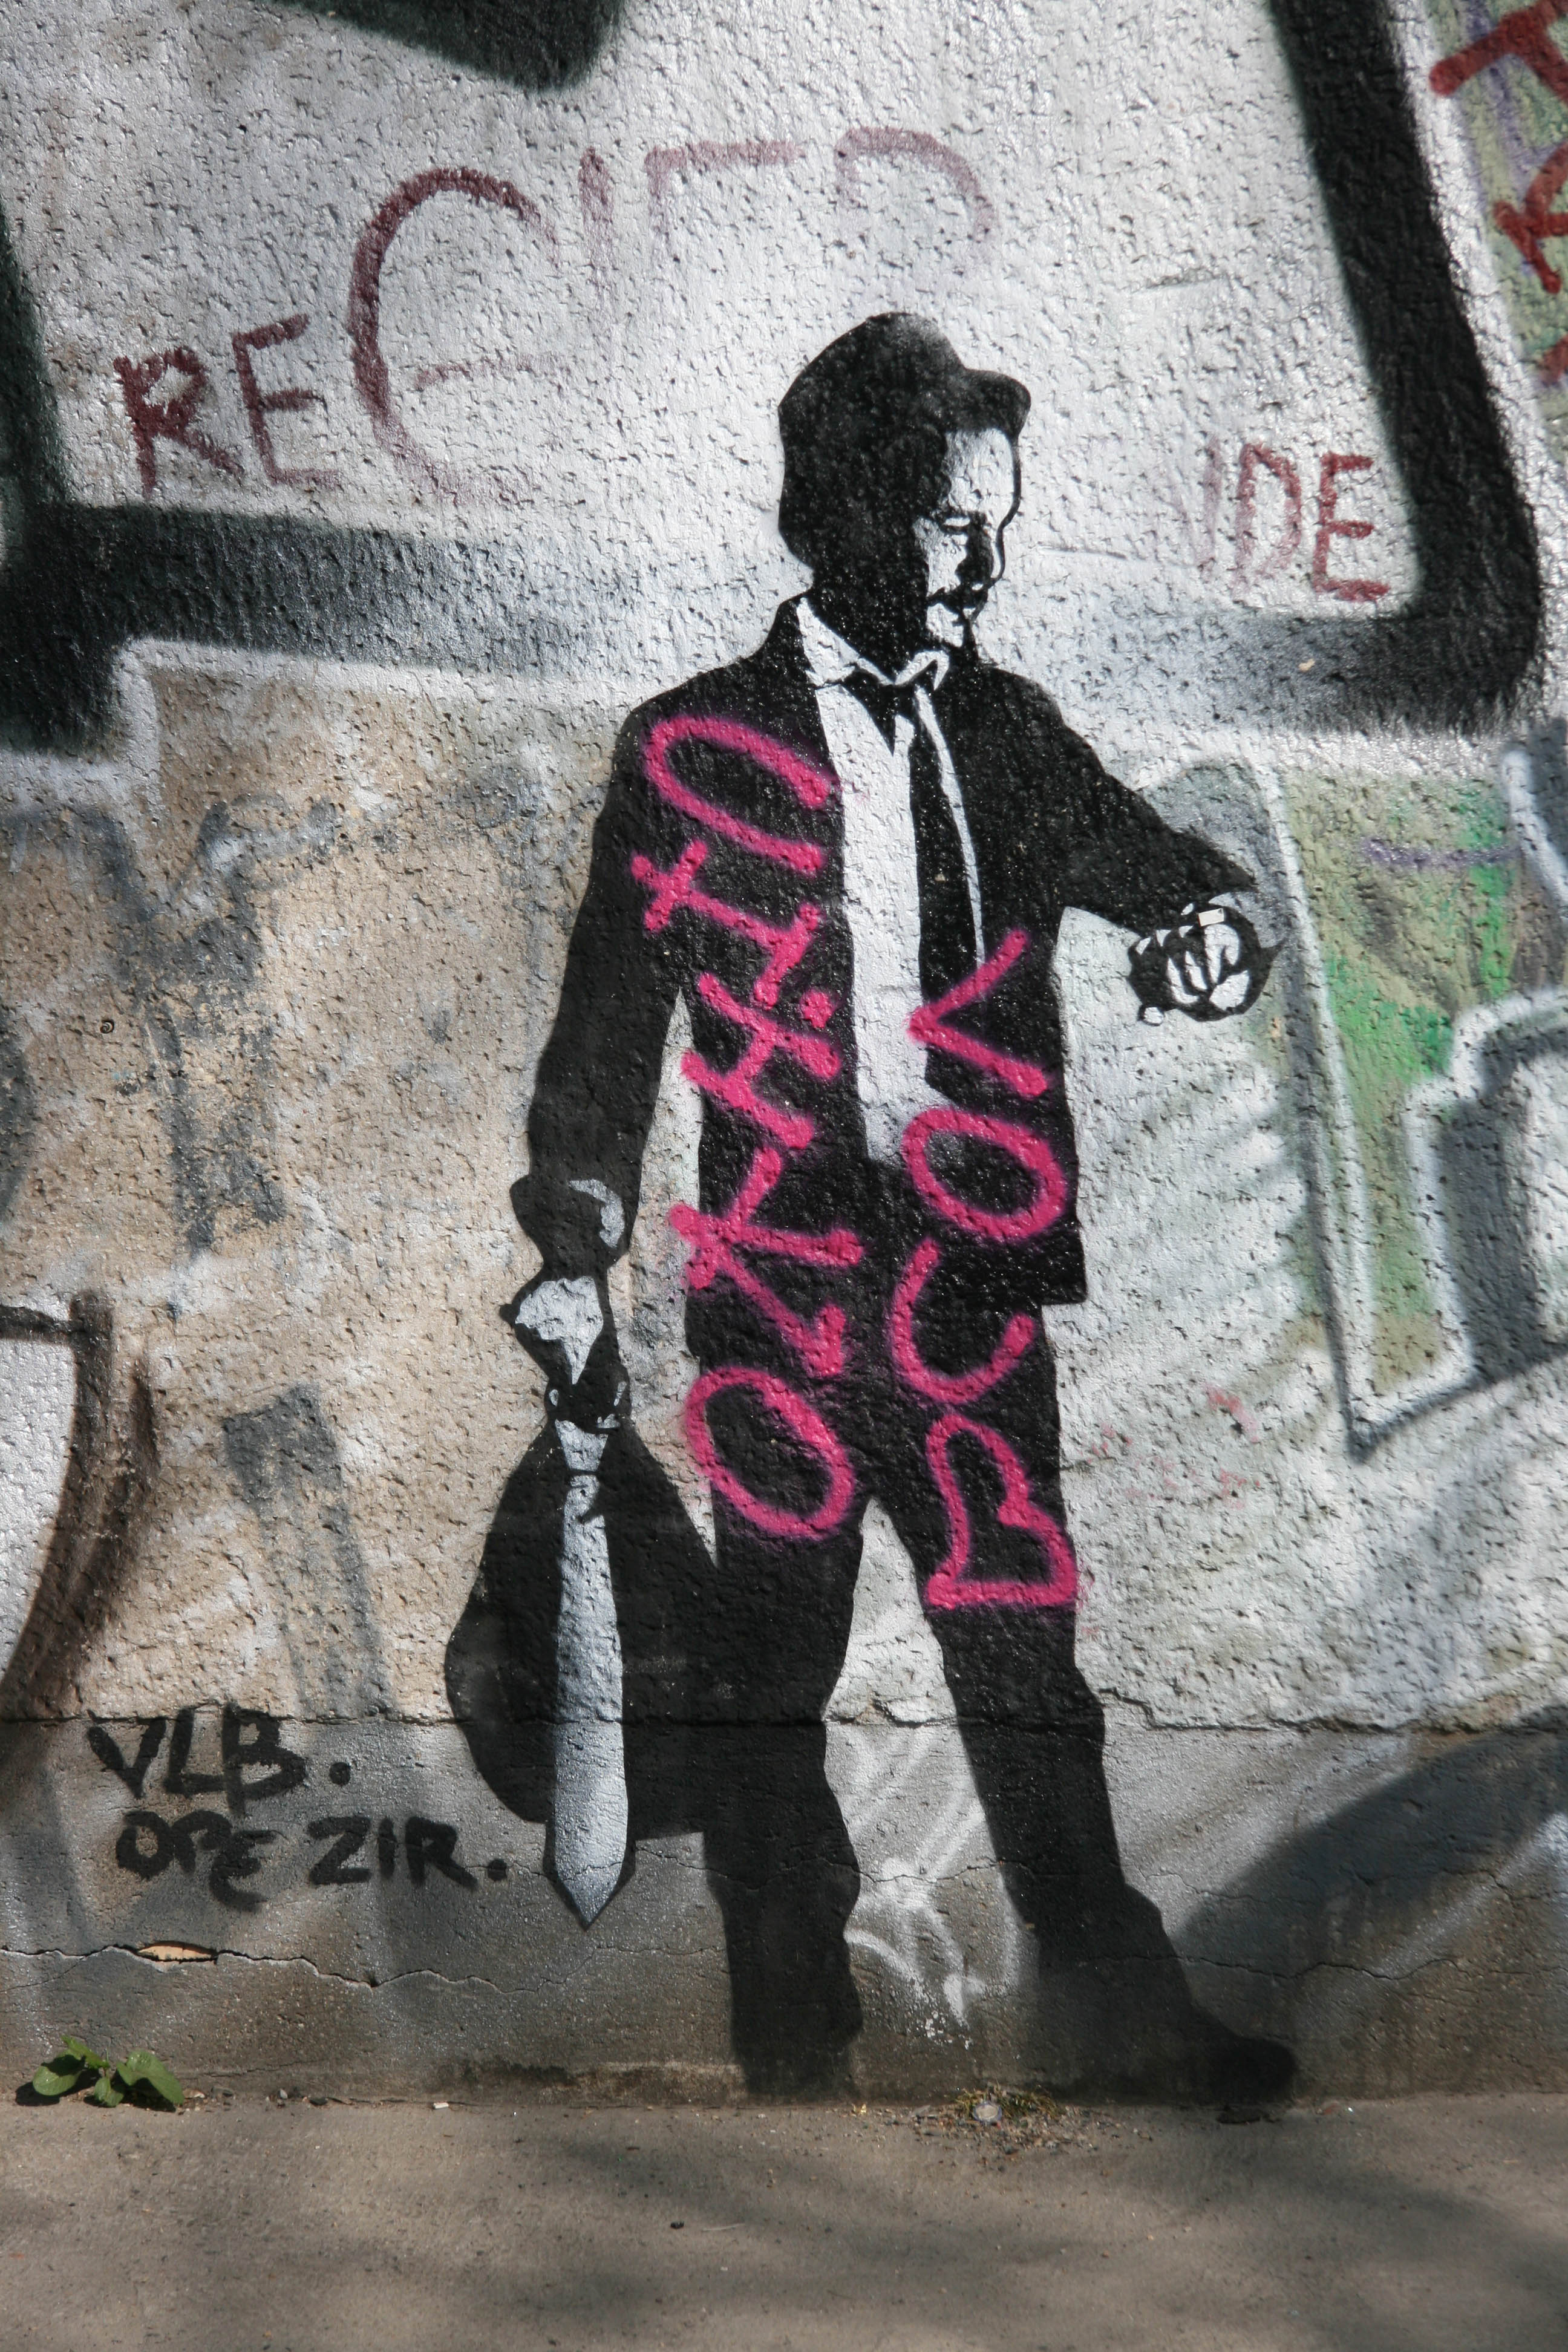 Lookin' Sharp: Street Art by Unknown Artist in Berlin